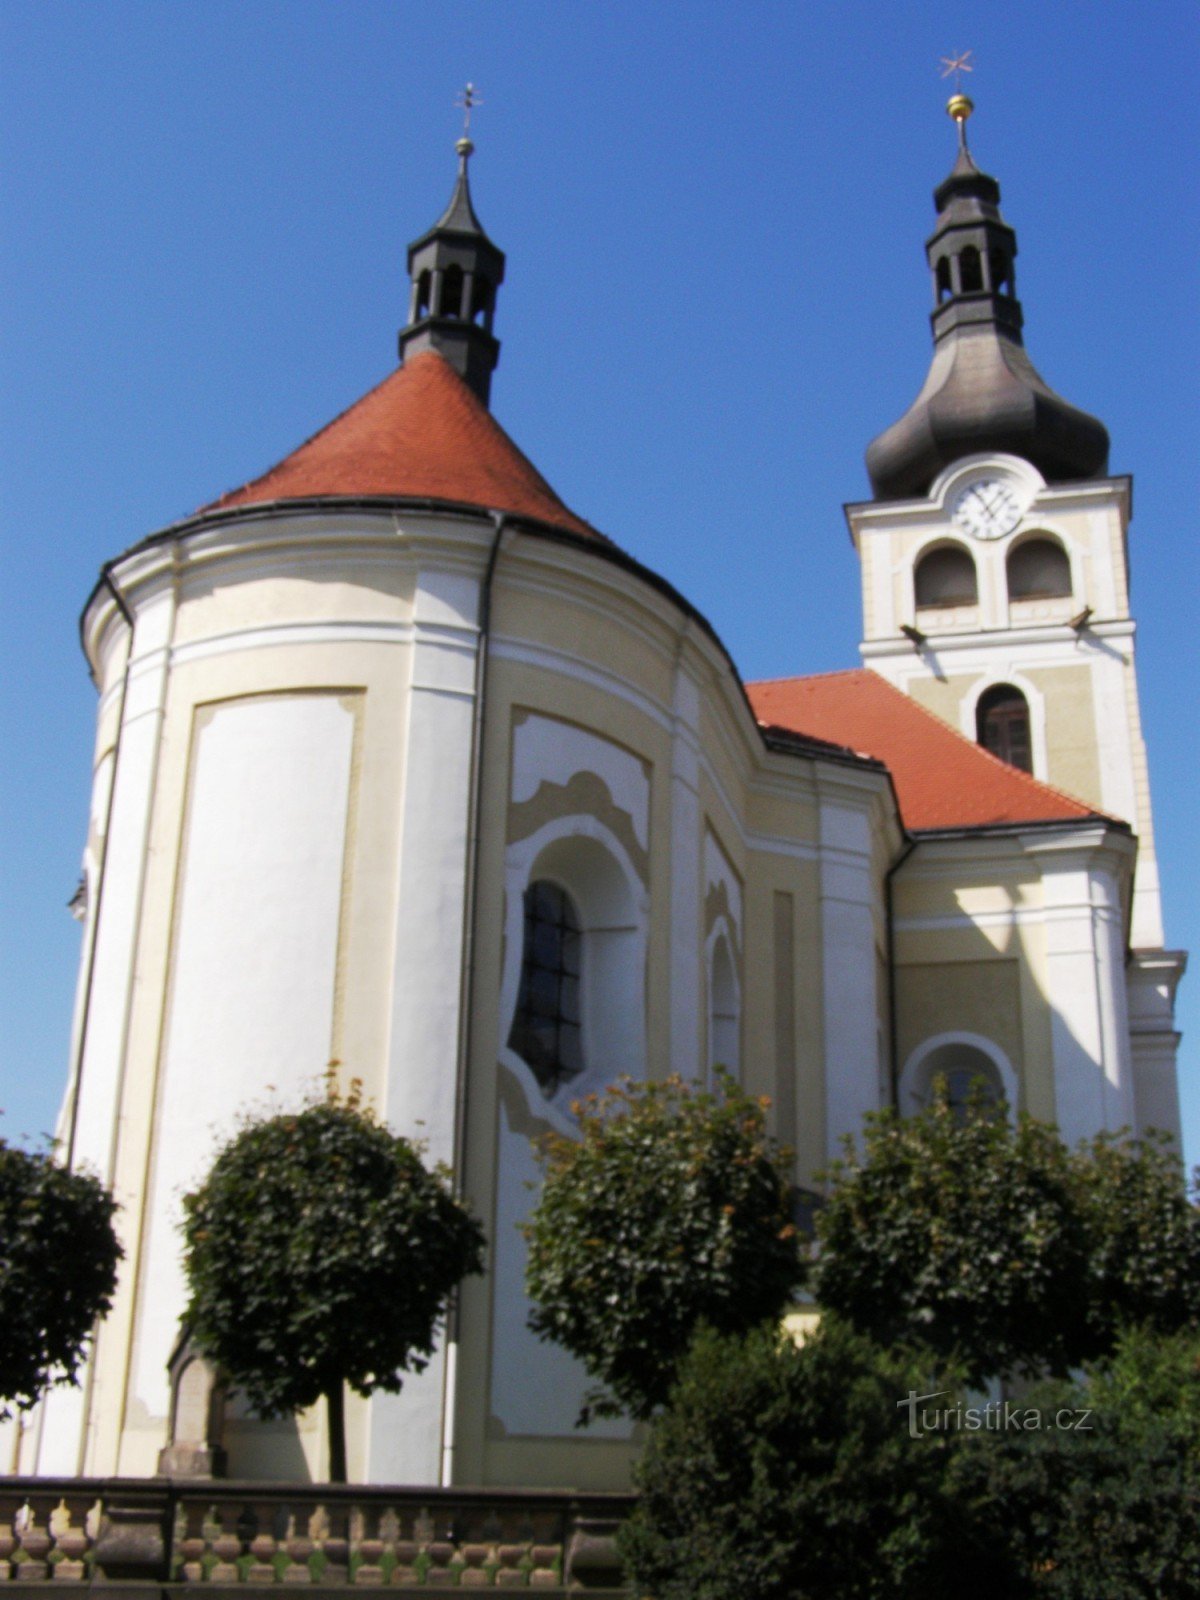 Hořice - church